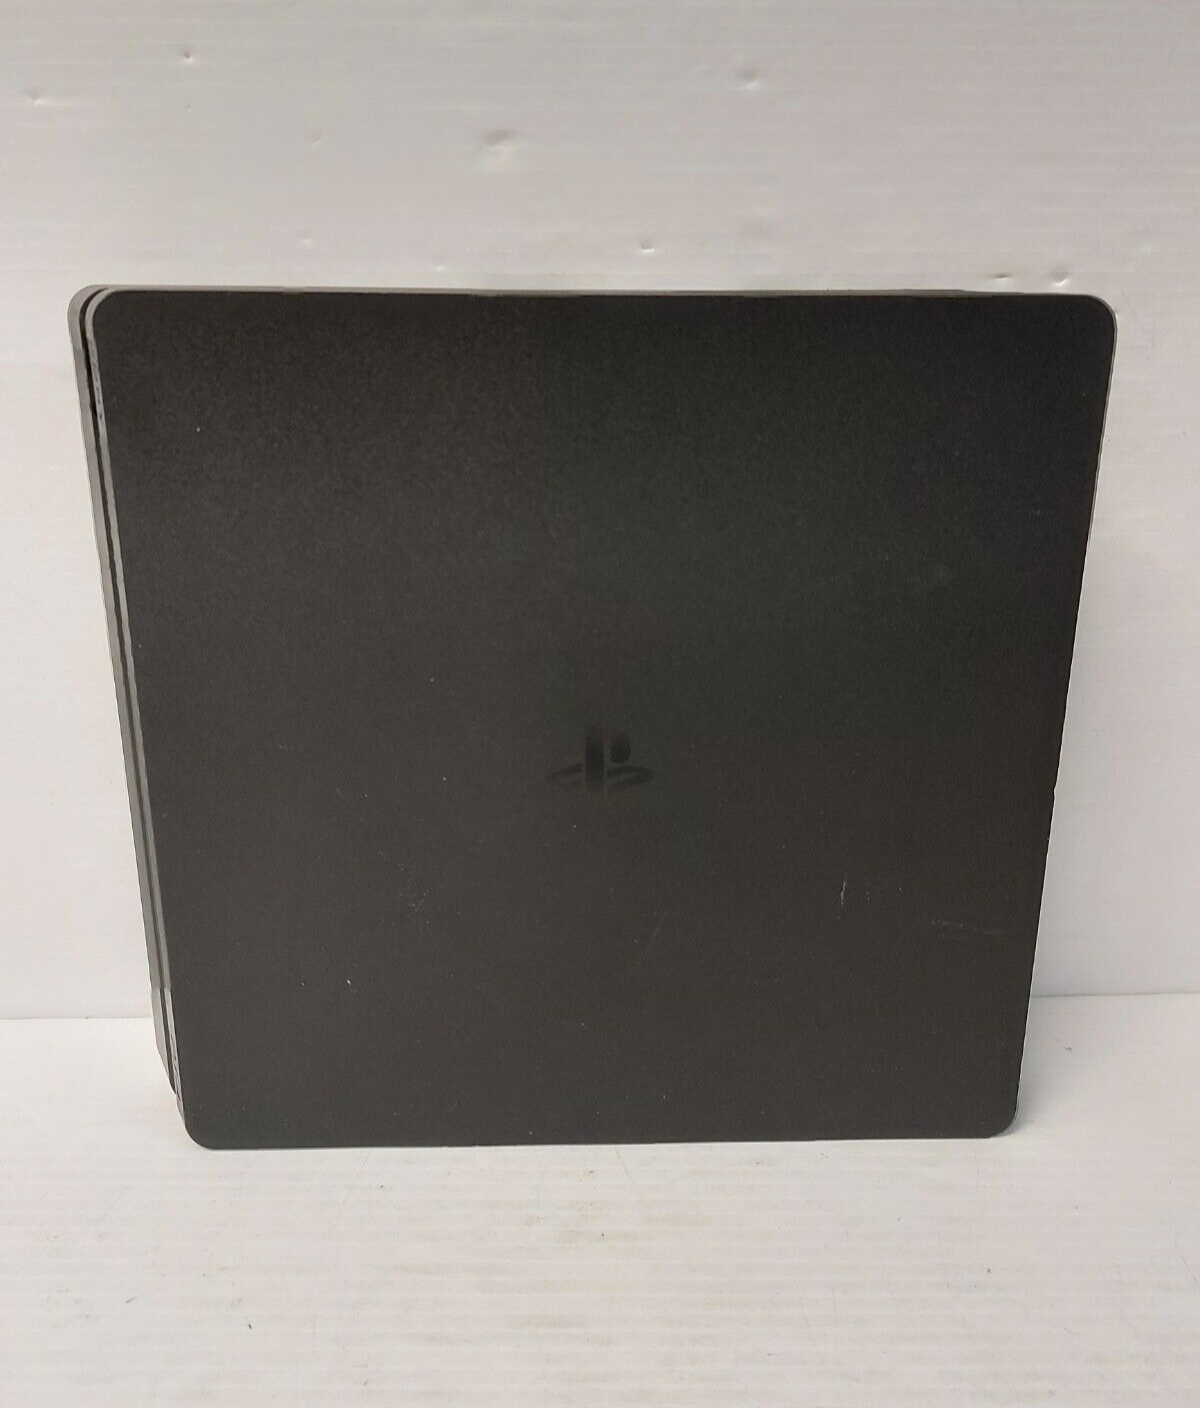 (N78225-1) Sony CUH-2215B PlayStation 4 Slim 1TB